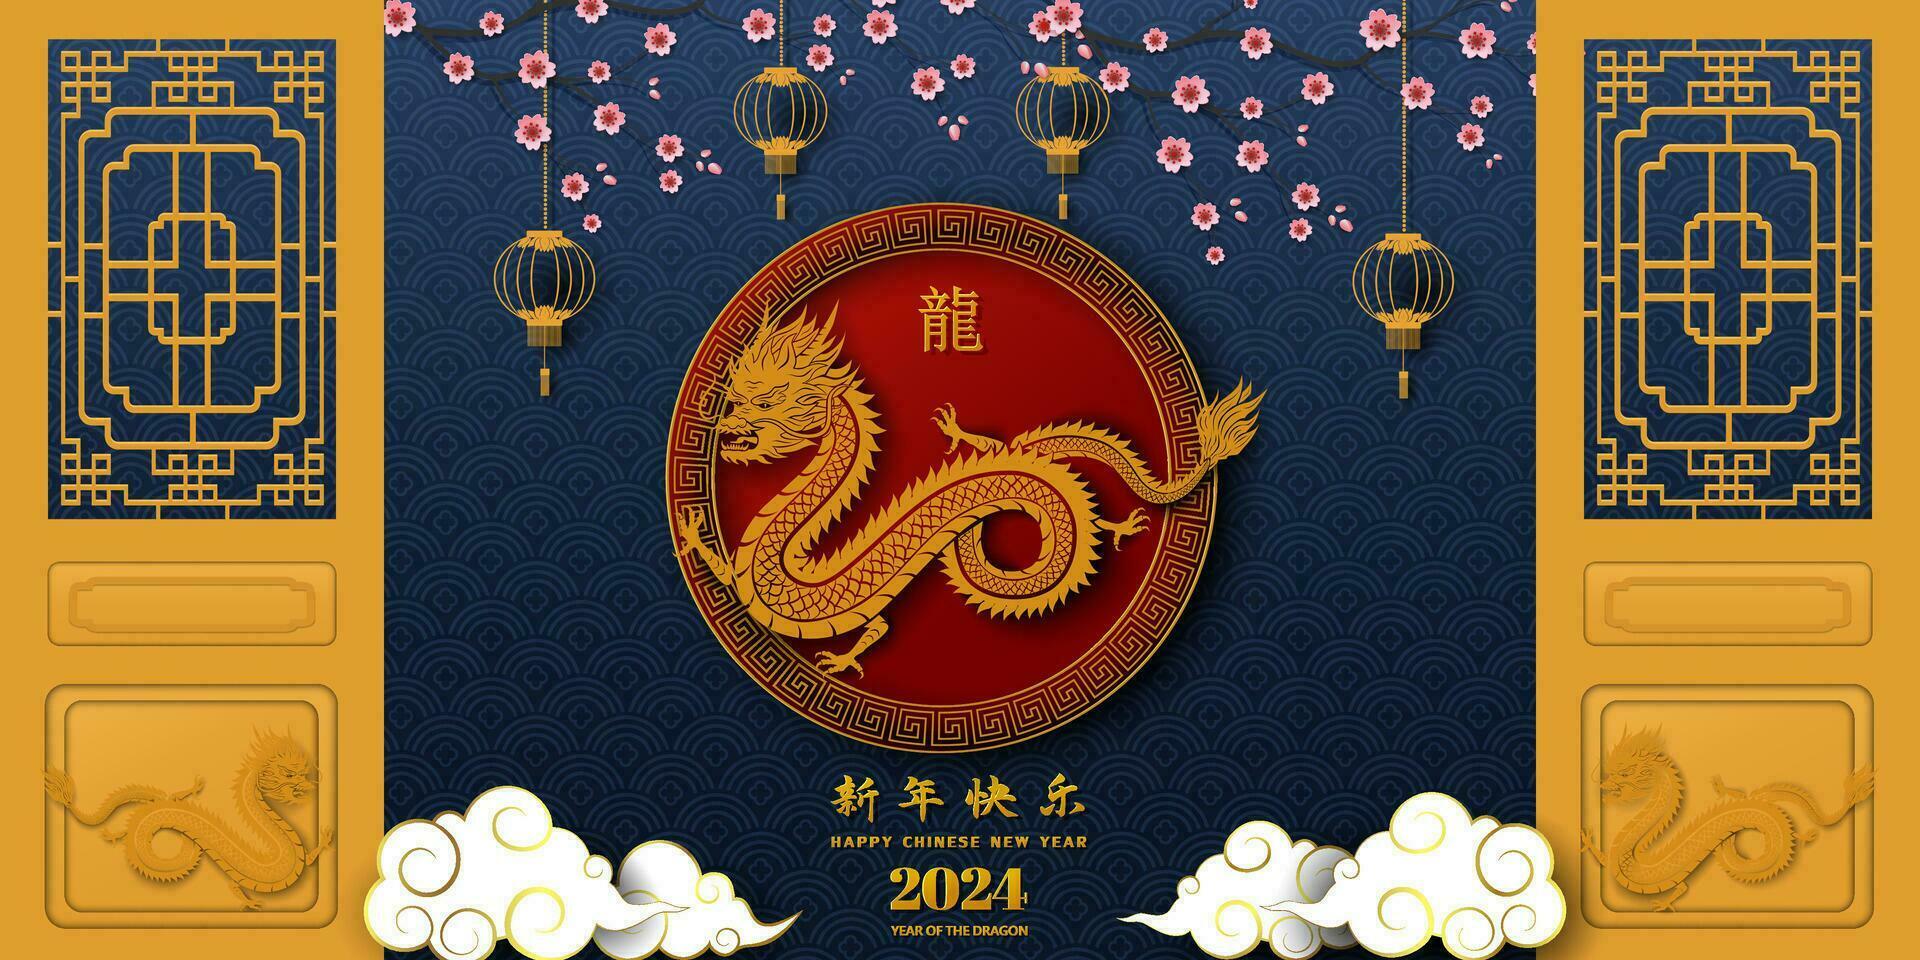 contento chino nuevo año 2024, zodiaco firmar para el año de continuar en asiático estilo, chino traducir media contento nuevo año 2024, dragón año vector